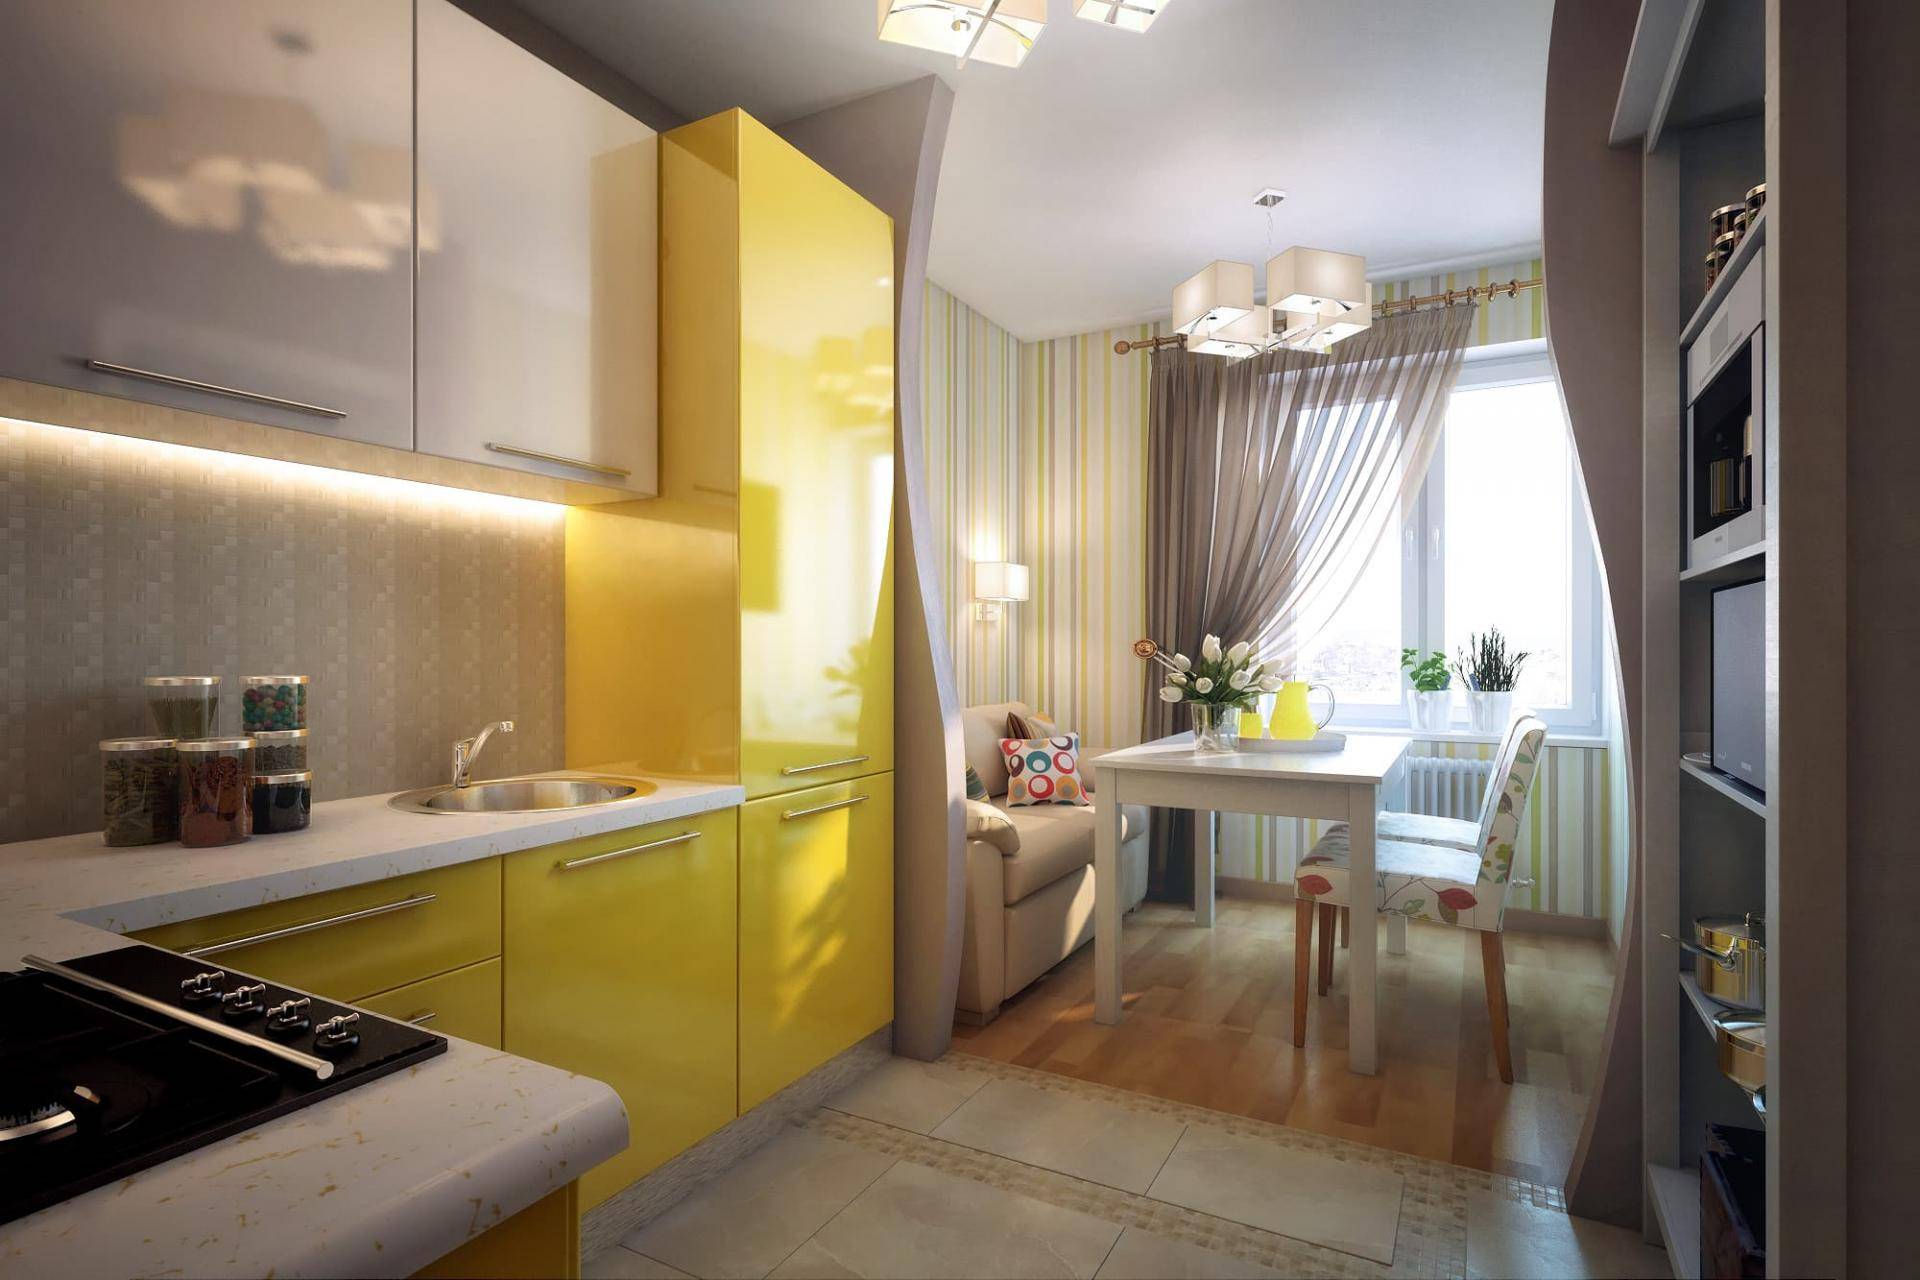 Дизайн прямоугольной кухни: планировка и фото интерьера, особенности помещения данной формы